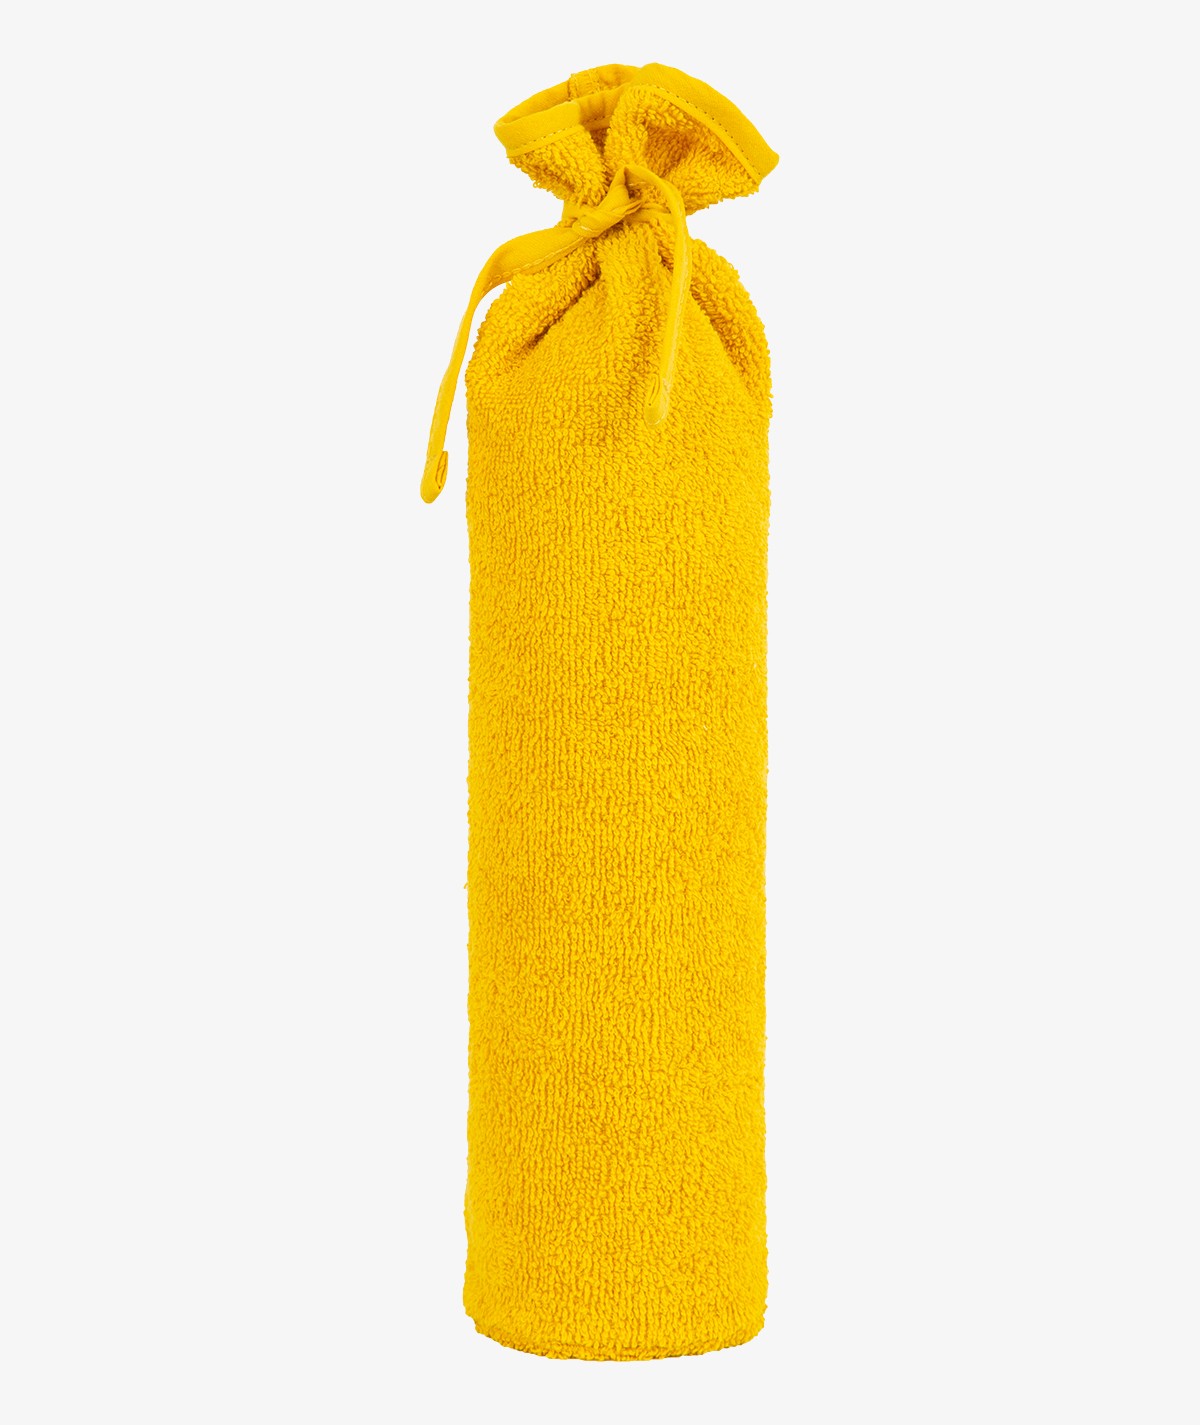 Cruche jaune foncé - 2 litres - bouillotte - bouillotte - poche à